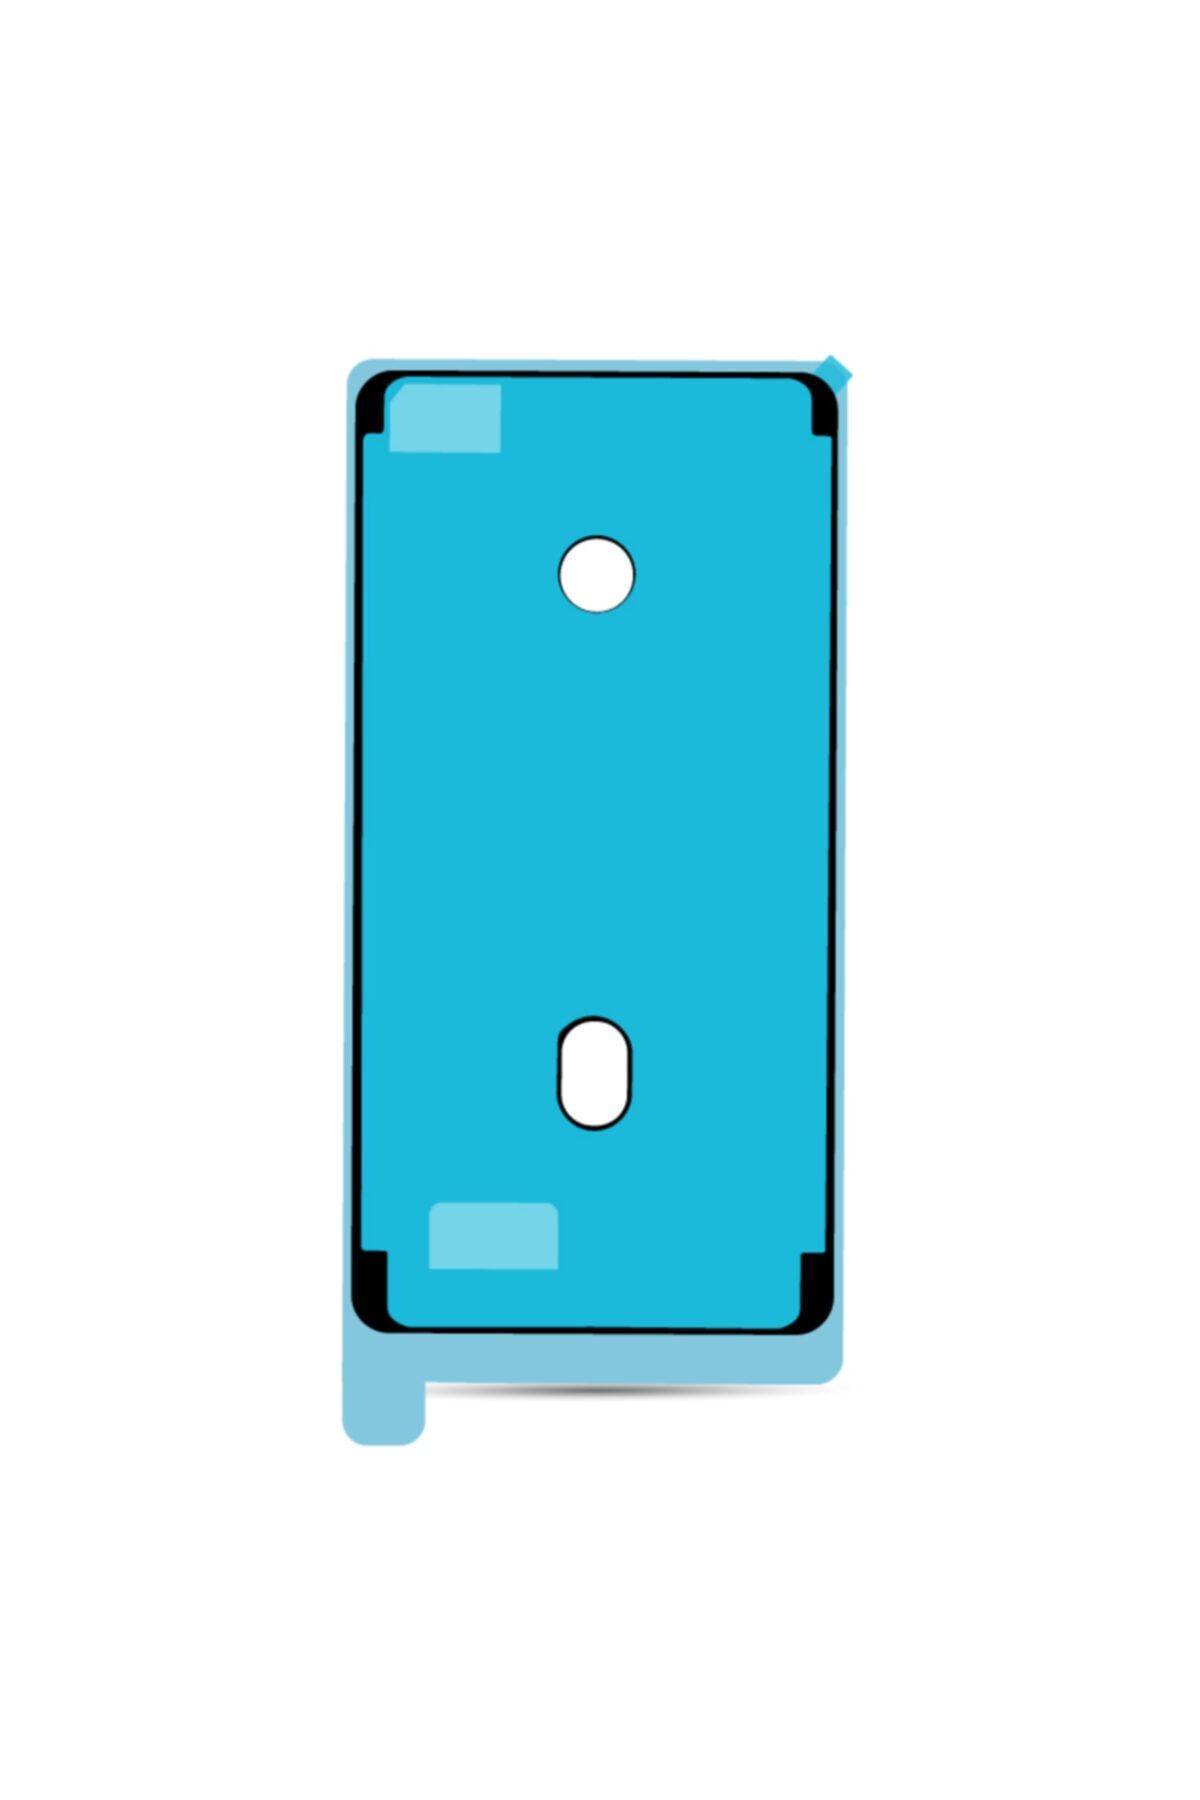 FPPRO Iphone 6s Plus Sıvı Ve Toza Dayanıklılık Bandı